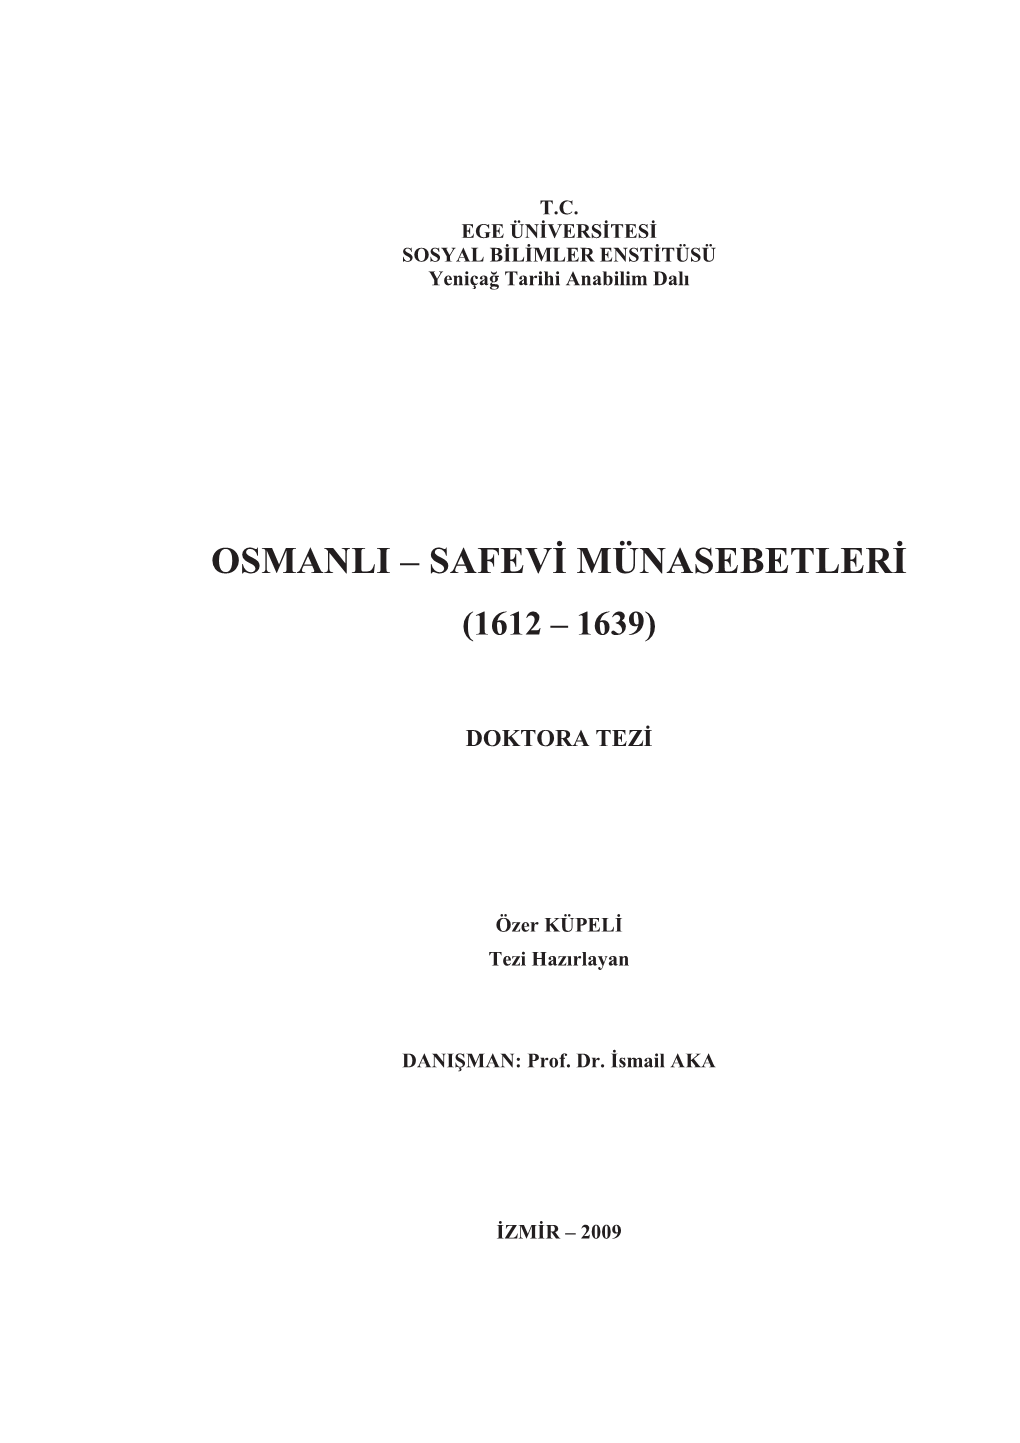 Osmanli – Safevi Münasebetleri (1612 – 1639)